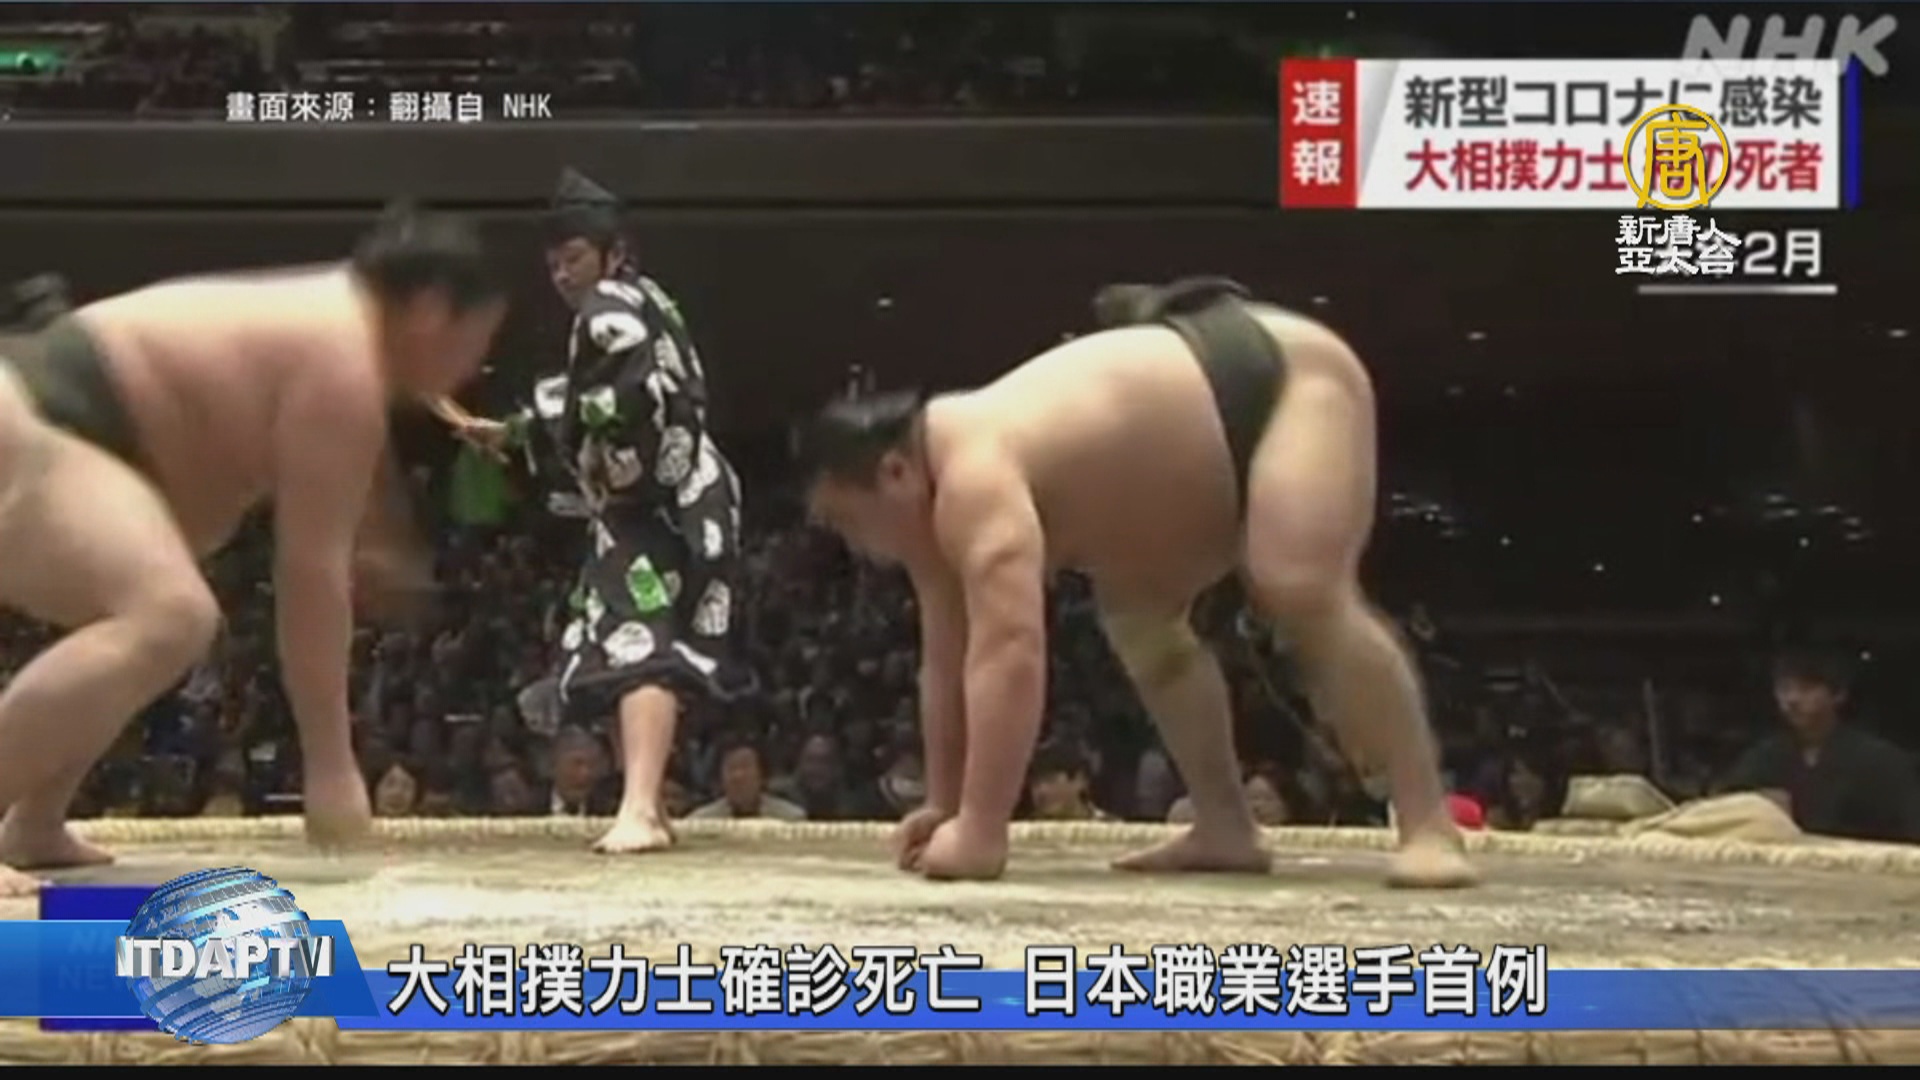 大相撲力士確診死亡日本職業選手首例 新唐人亞太電視台